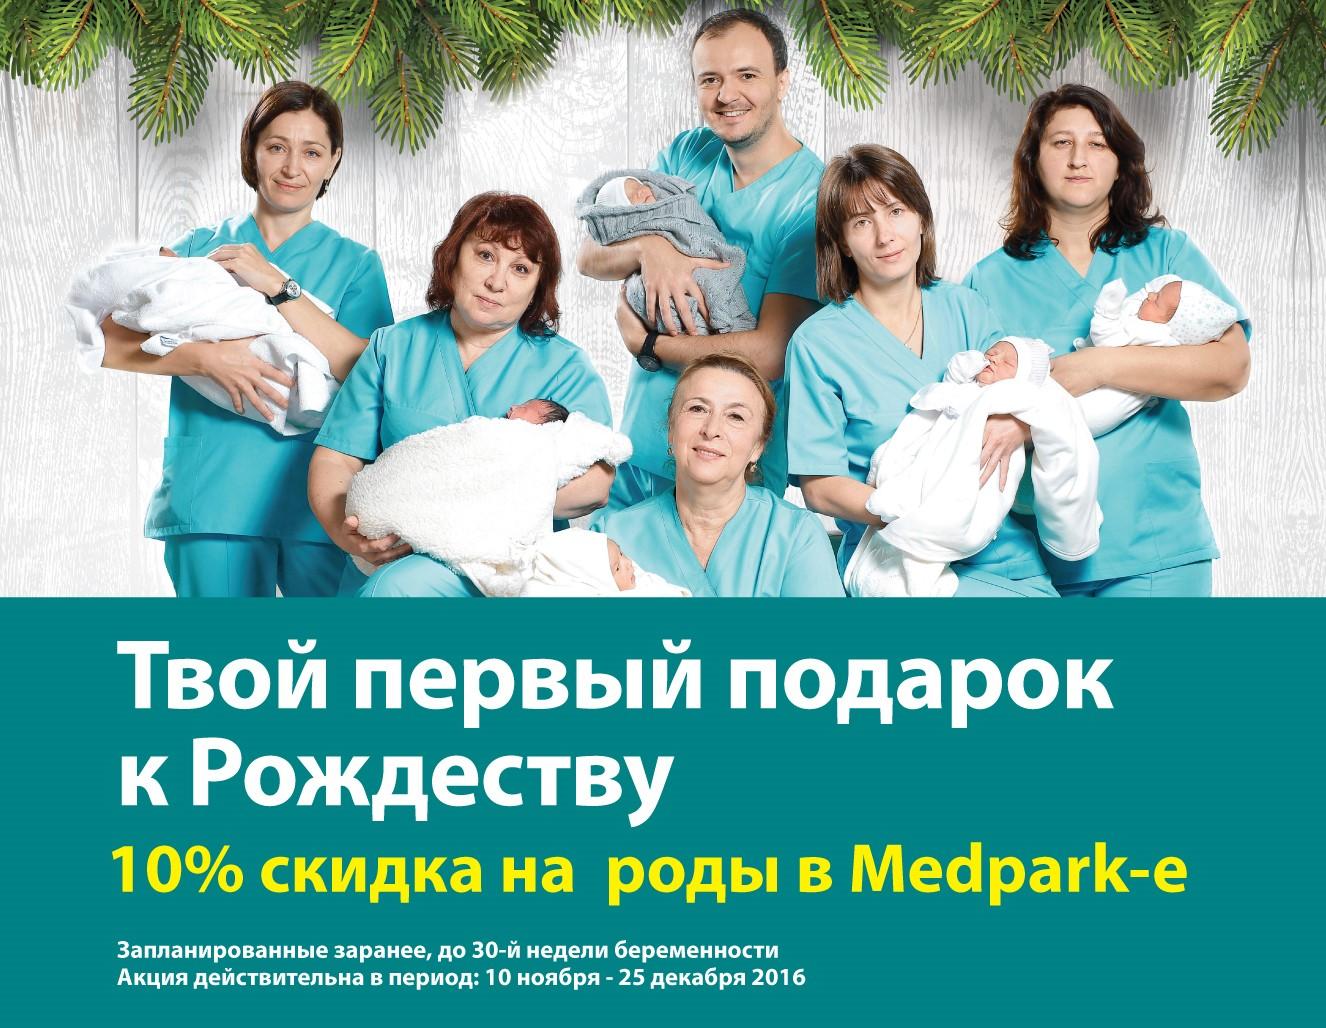 Центр Материнства Medpark предоставляет тебе первый Подарок на Рождество